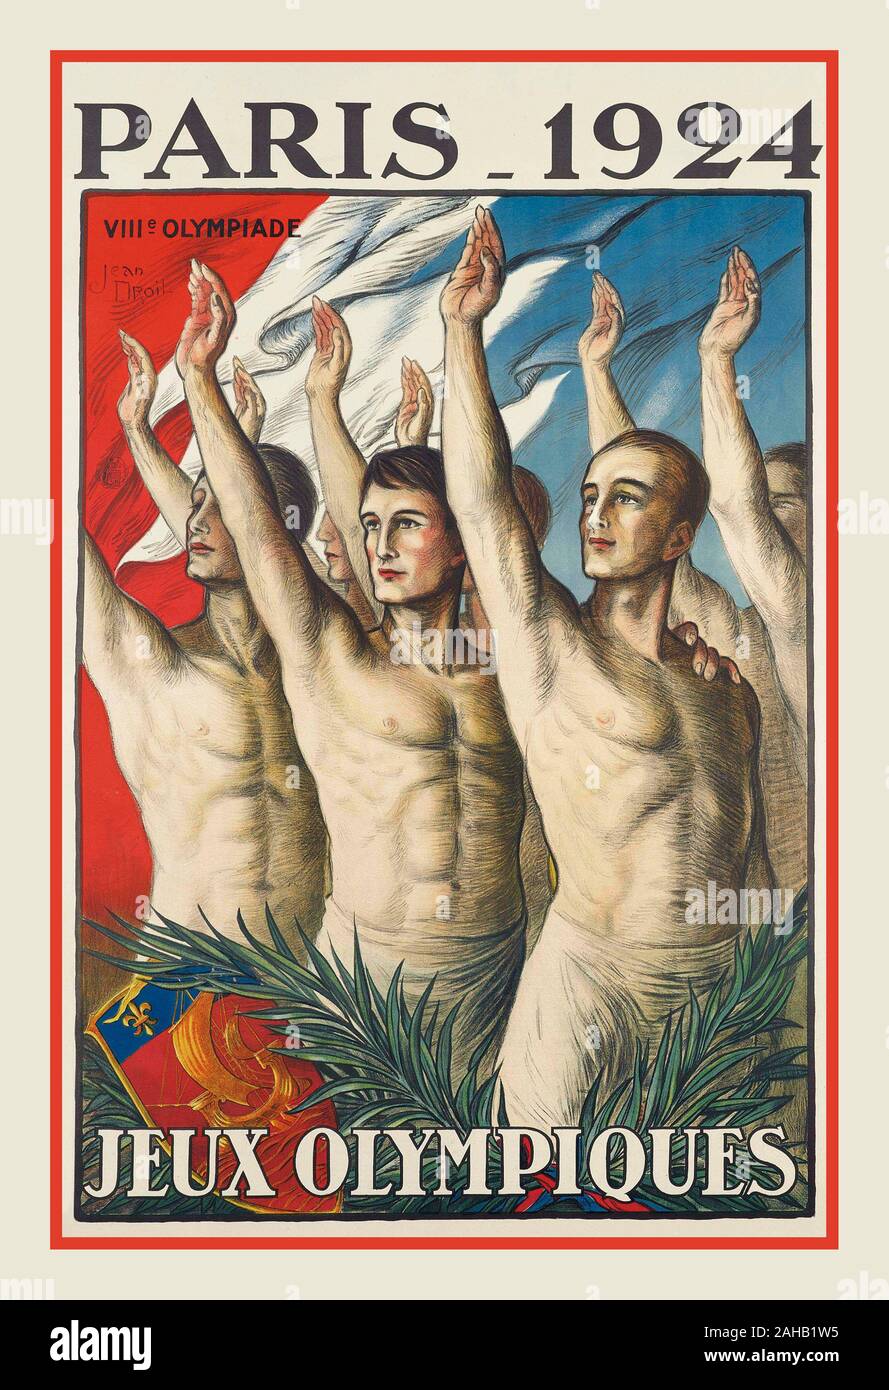 OLIMPIADI di PARIGI 1924 OLYMPIADE VINTAGE PARIS 1924, poster dei Giochi Olimpici JEUX OLYMPIQUES litografia a colori, 1924, stampato da Hachard & Cie., Parigi, Foto Stock